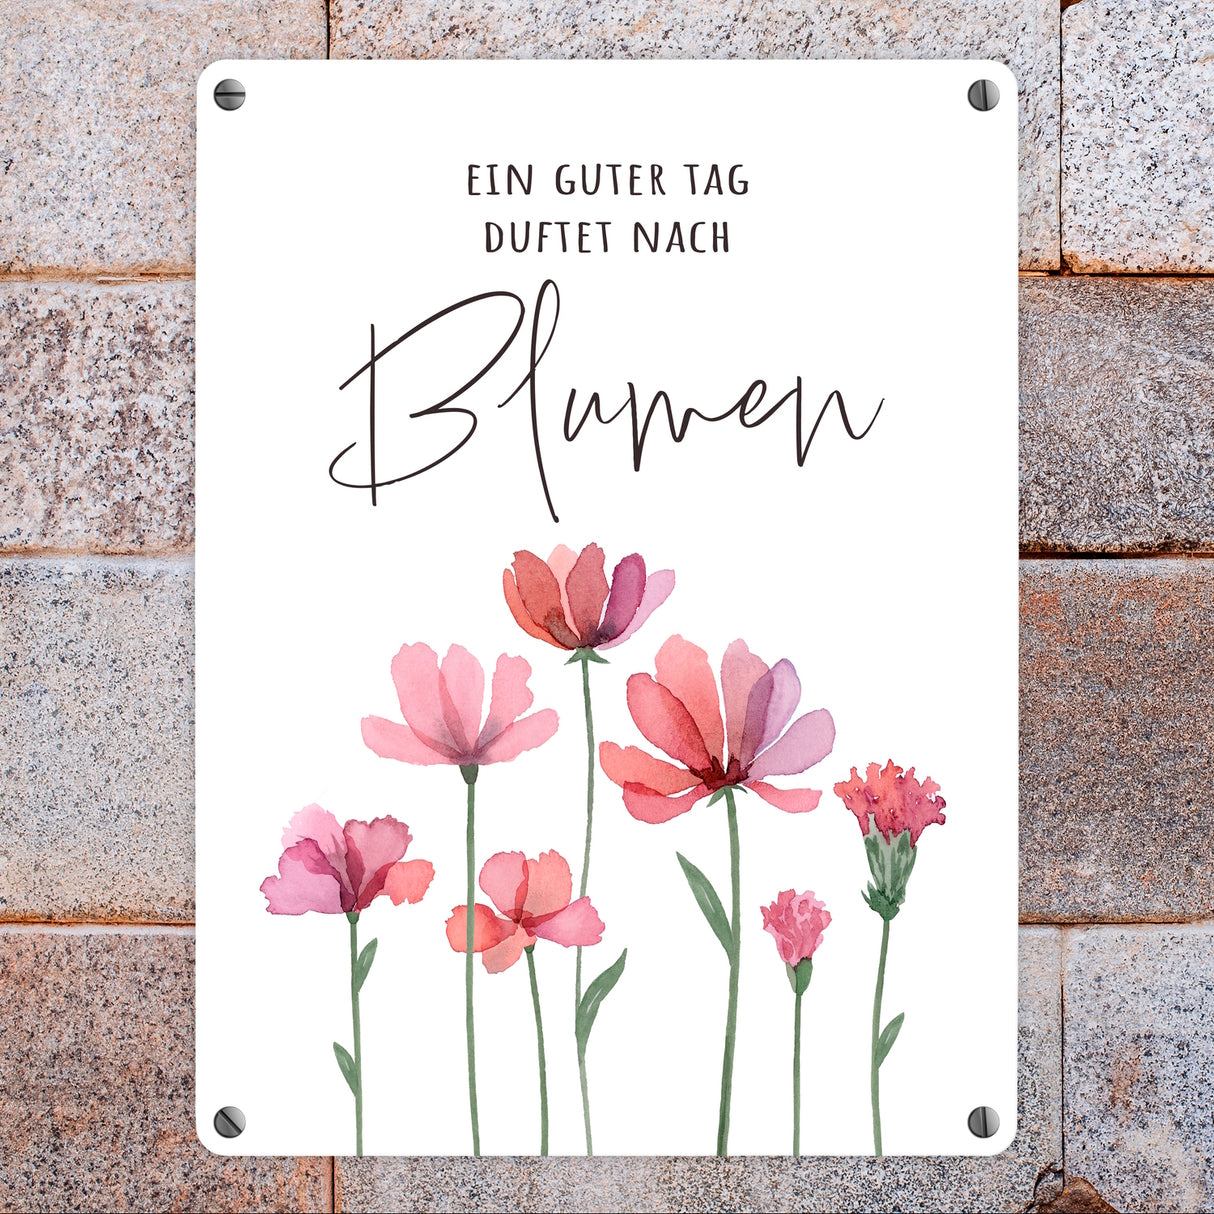 Aquarell Blumen Metallschild in 15x20 cm mit Spruch Ein guter Tag duftet nach Blumen